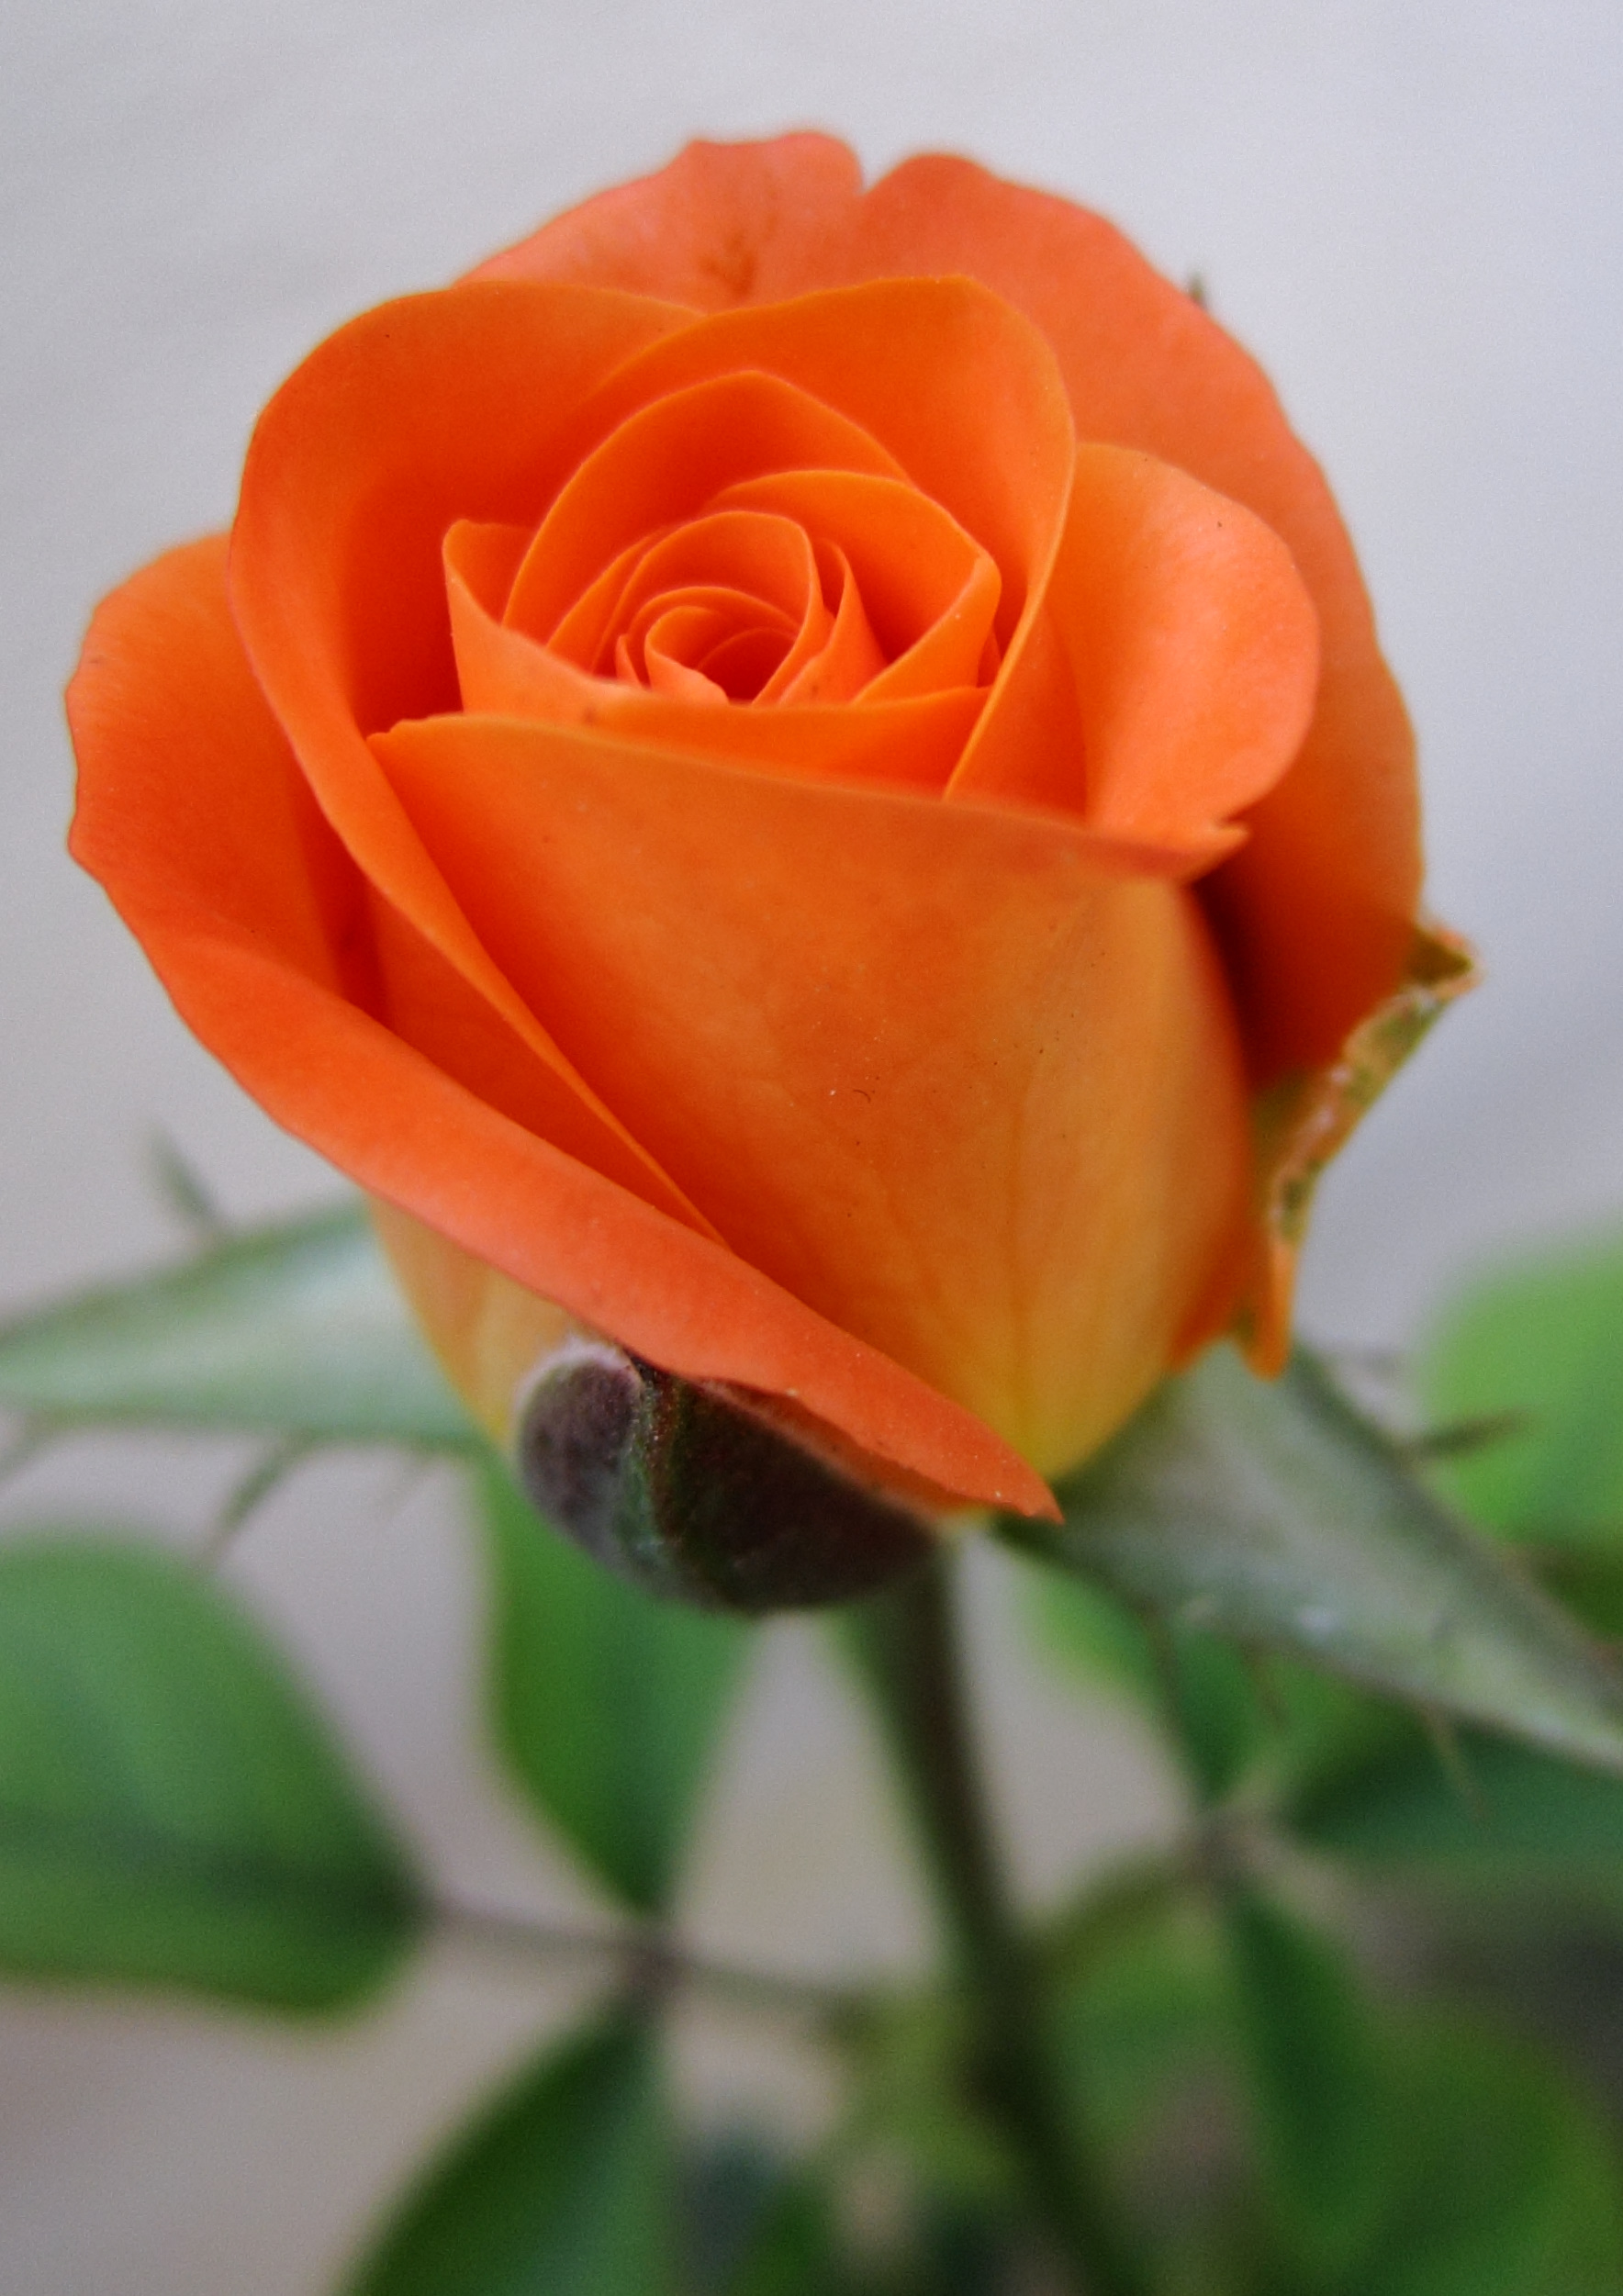 Rose bud - Bing Images | flower | Pinterest | Rose buds, Rose and ...